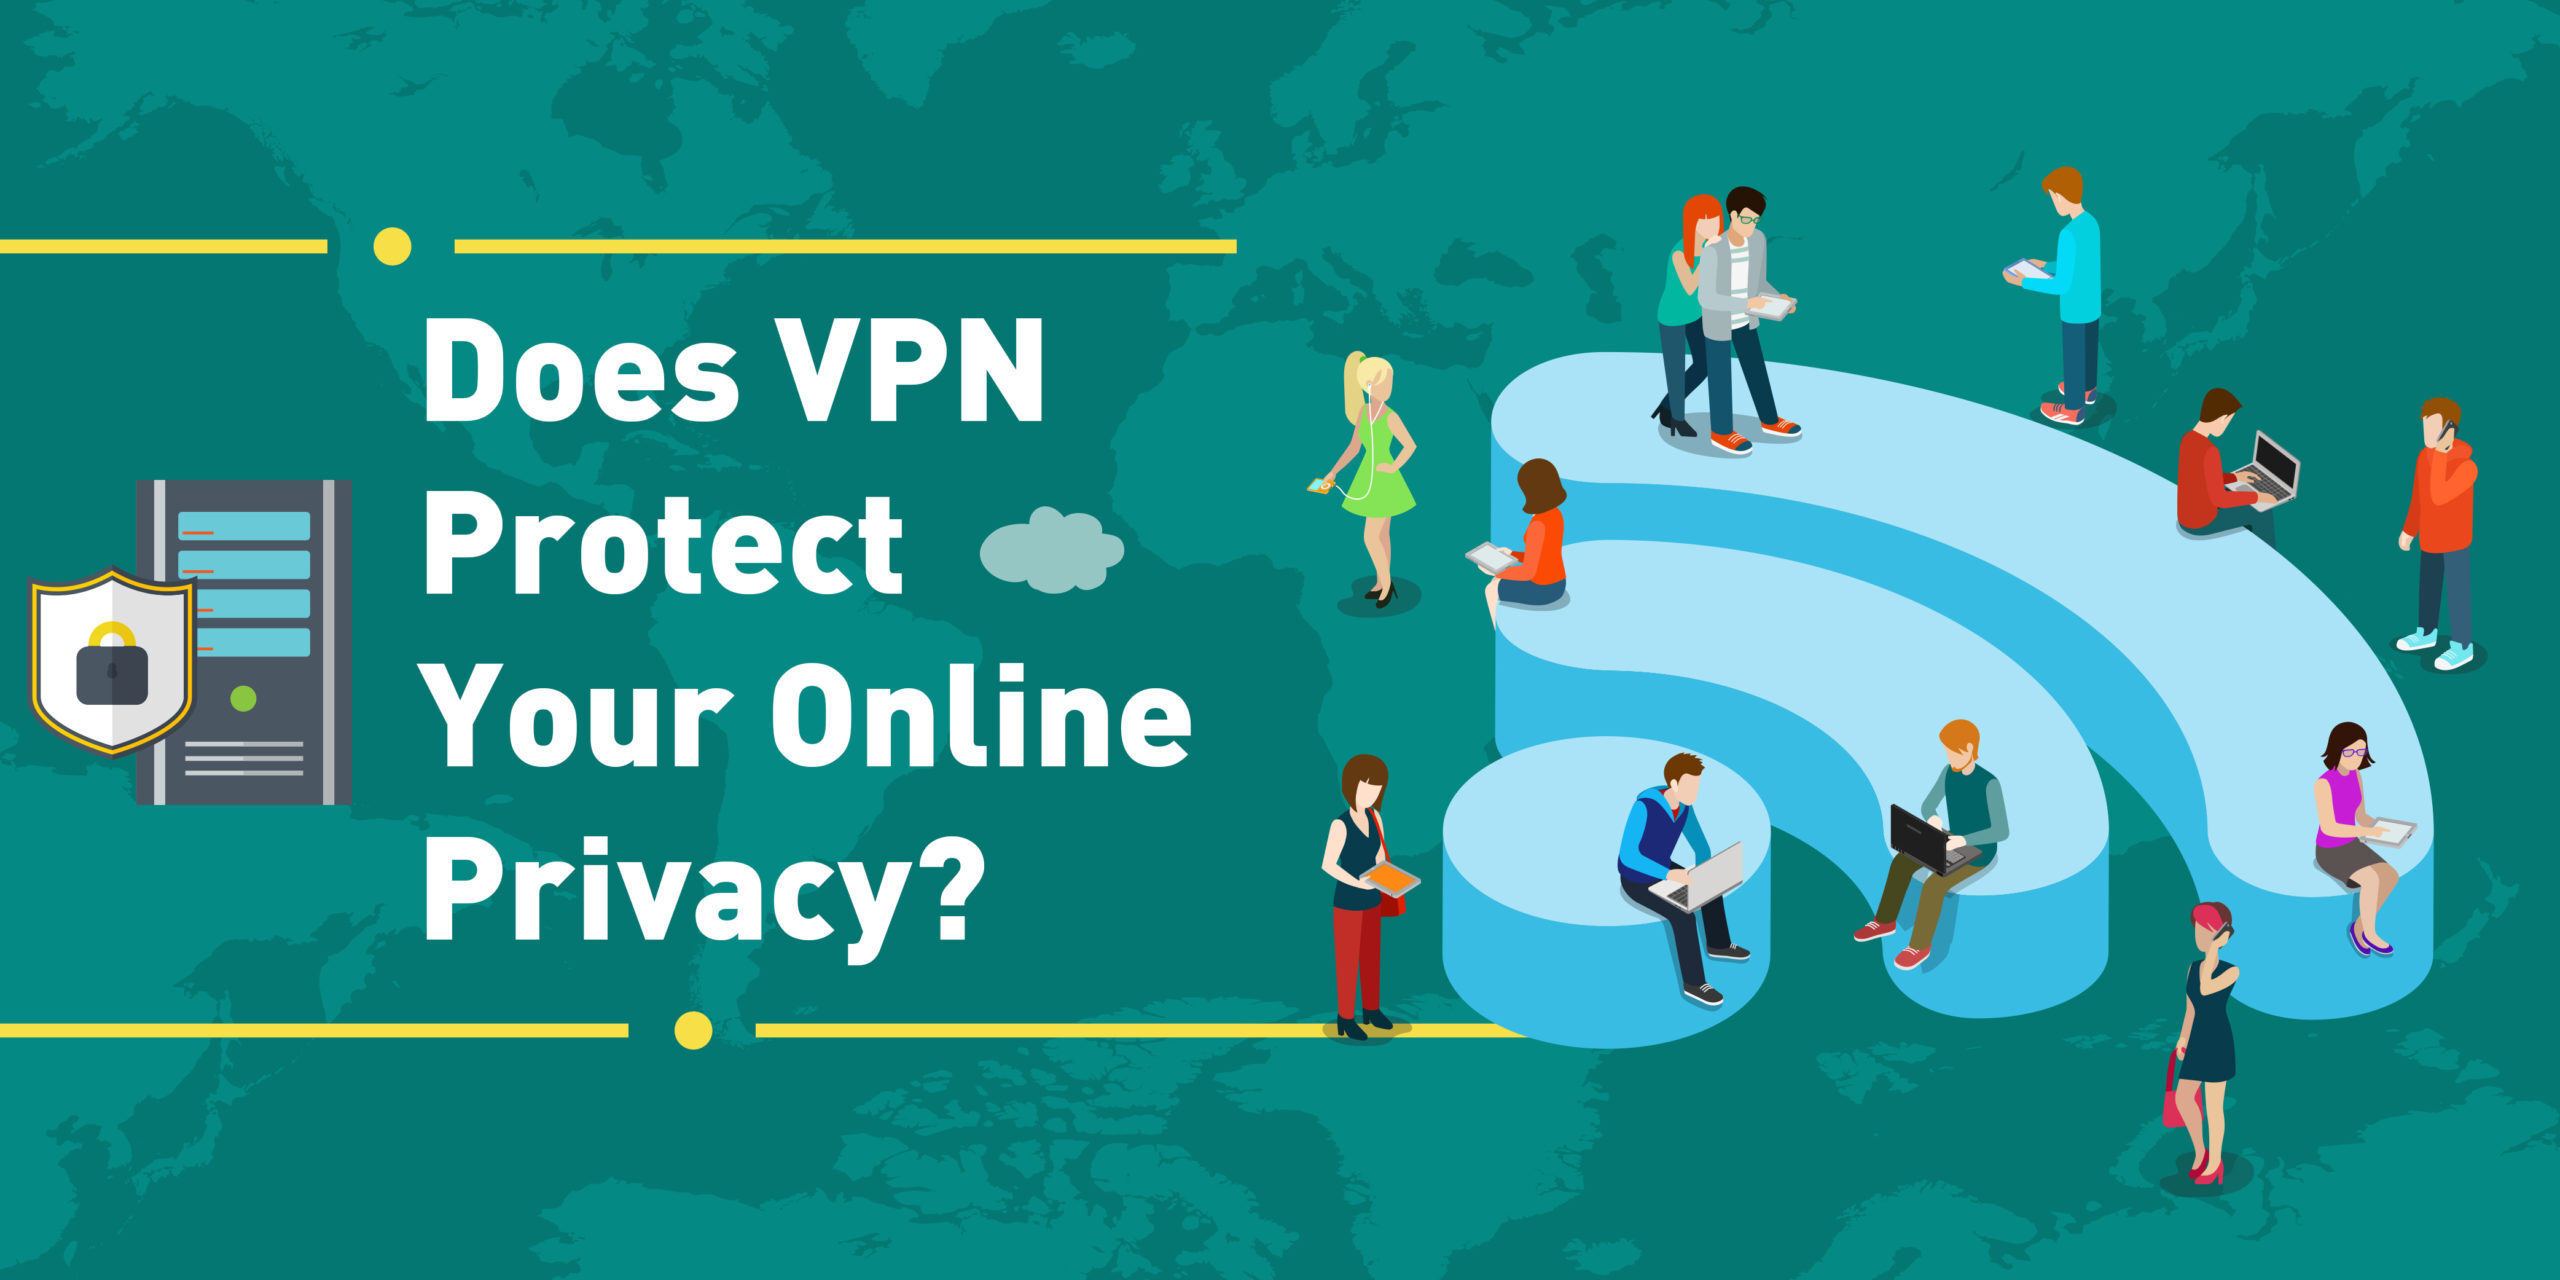 Η VPN προστατεύει την ηλεκτρονική σας κεφαλίδα απορρήτου FA